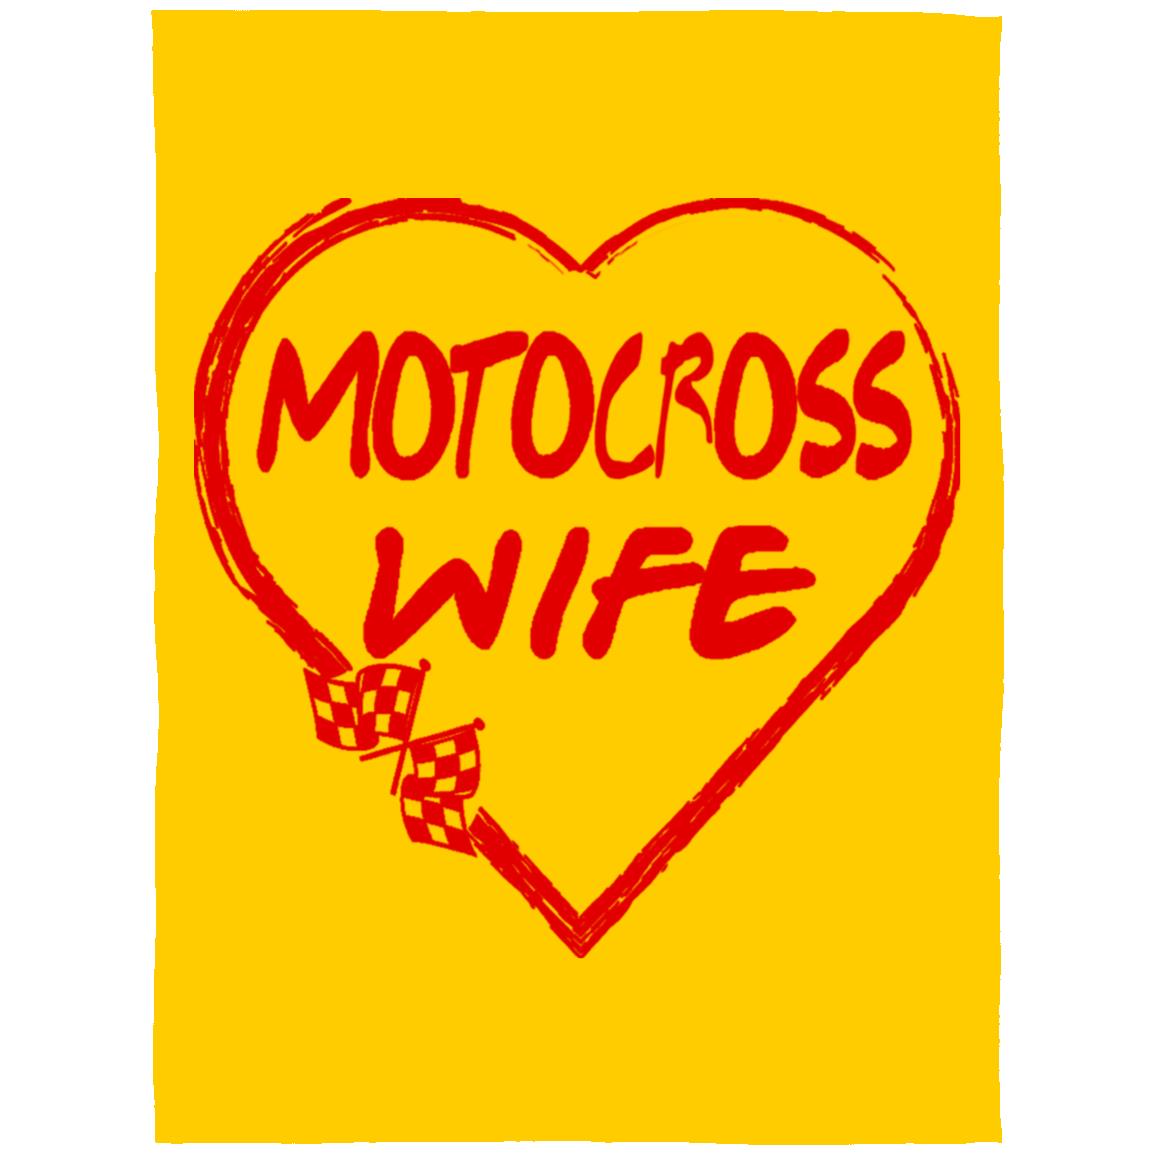 Motocross Wife Arctic Fleece Blanket 60x80